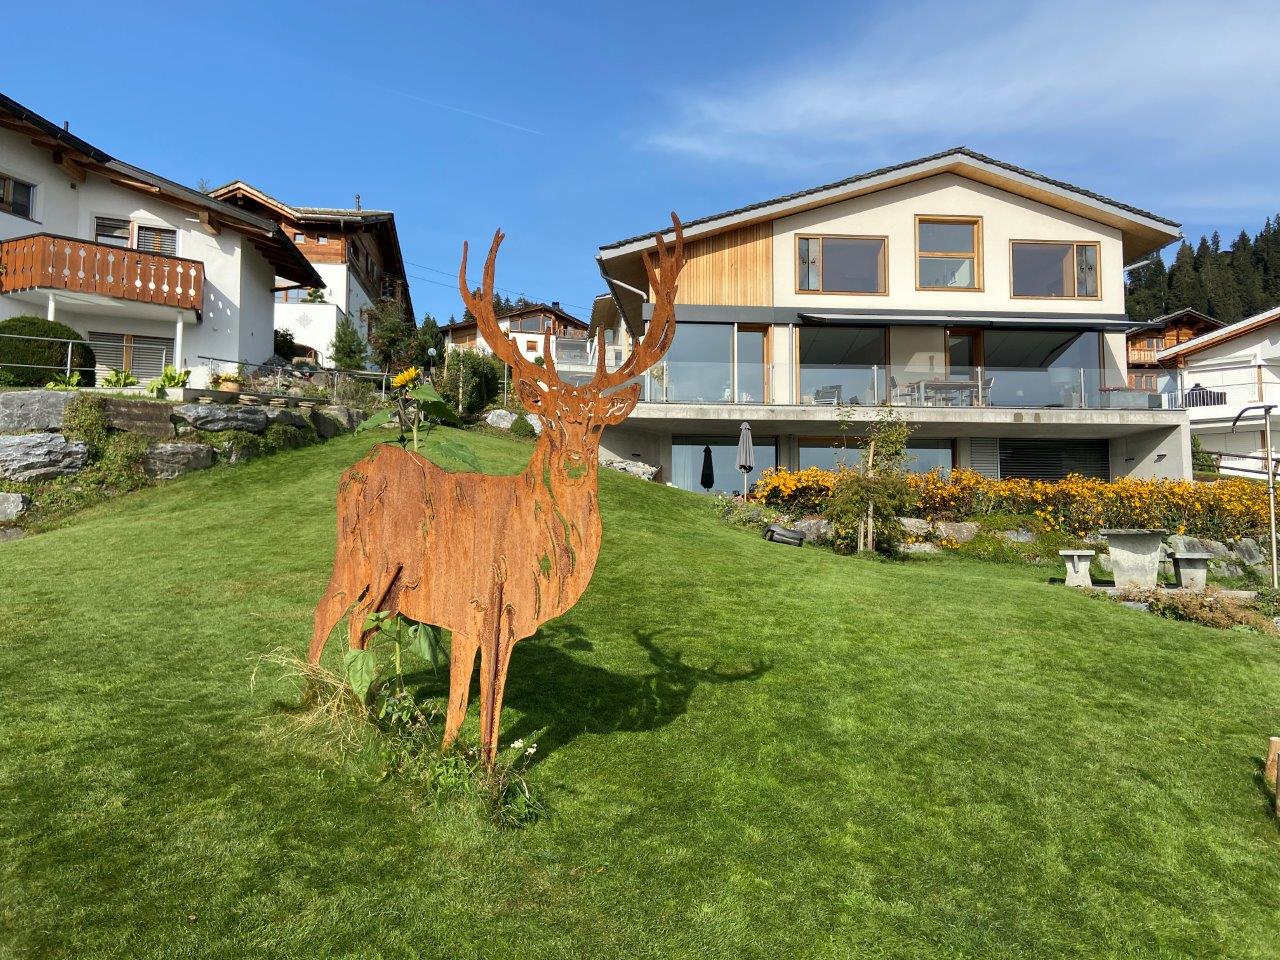 Casa Admisa, (Flims Dorf). 3.5 Ferienwohnung, 2 Du Ferienwohnung in der Schweiz